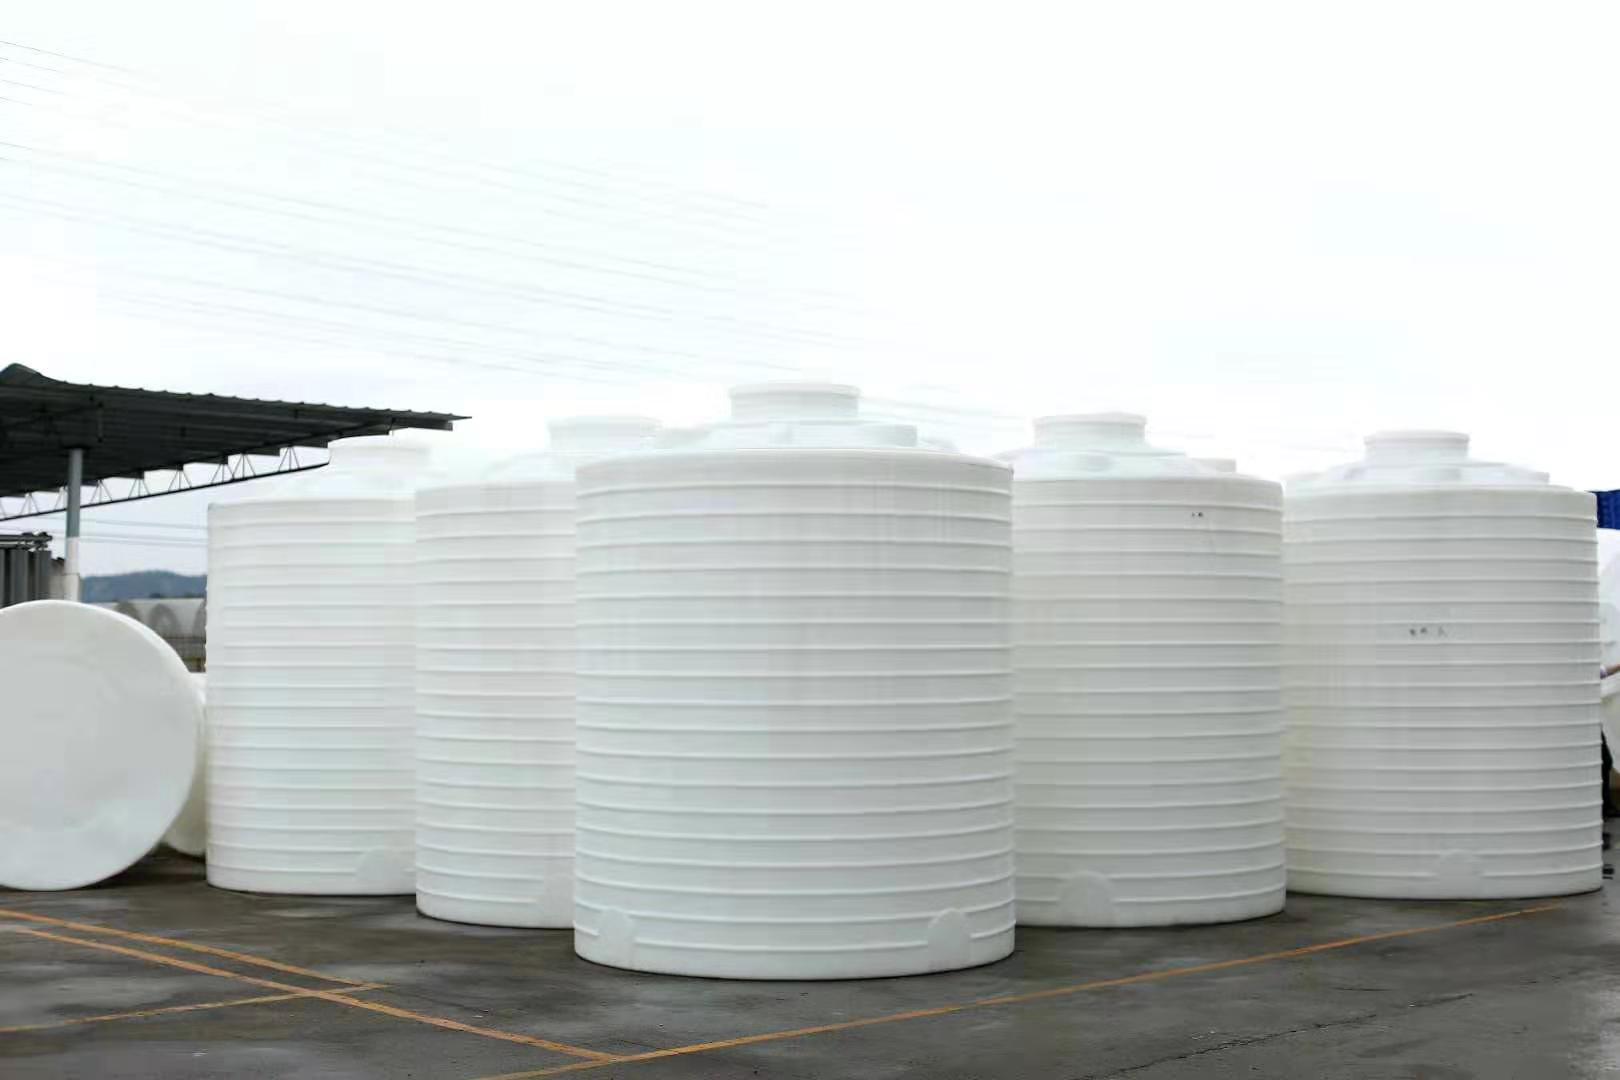 成华碱水剂塑料桶_10吨外加剂储罐厂家